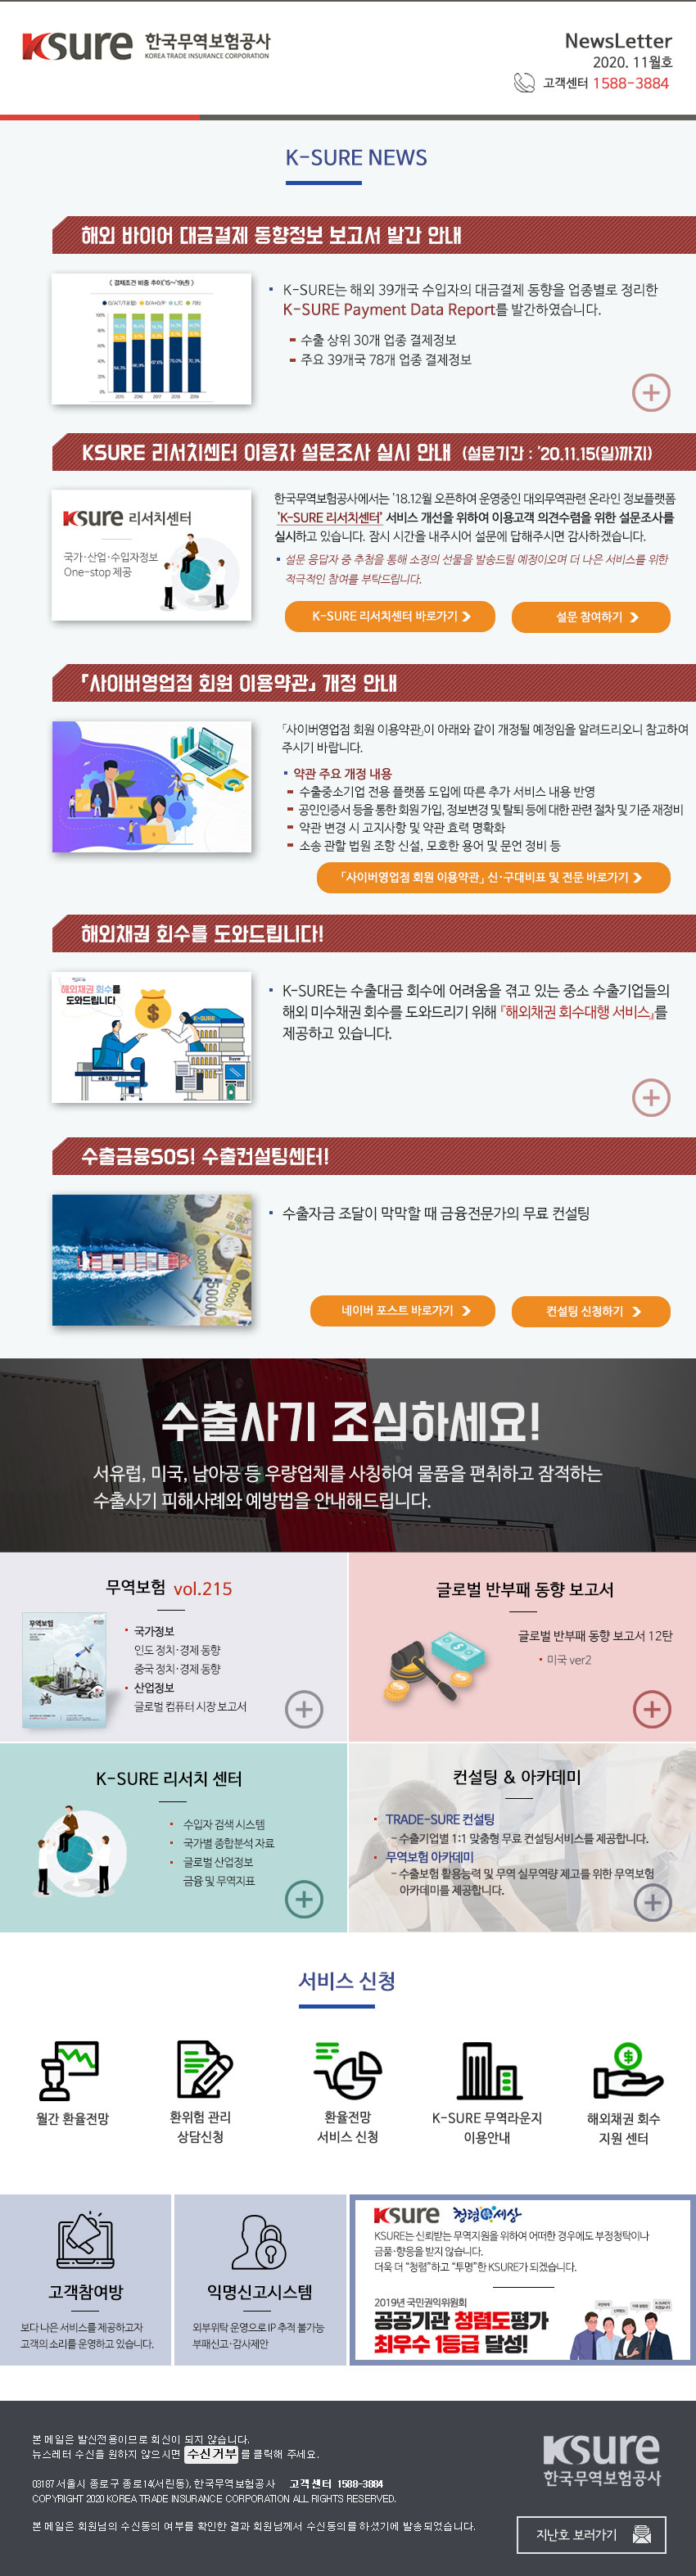 한국무역보험공사에서 보내드리는 2020년 11월 뉴스레터입니다.